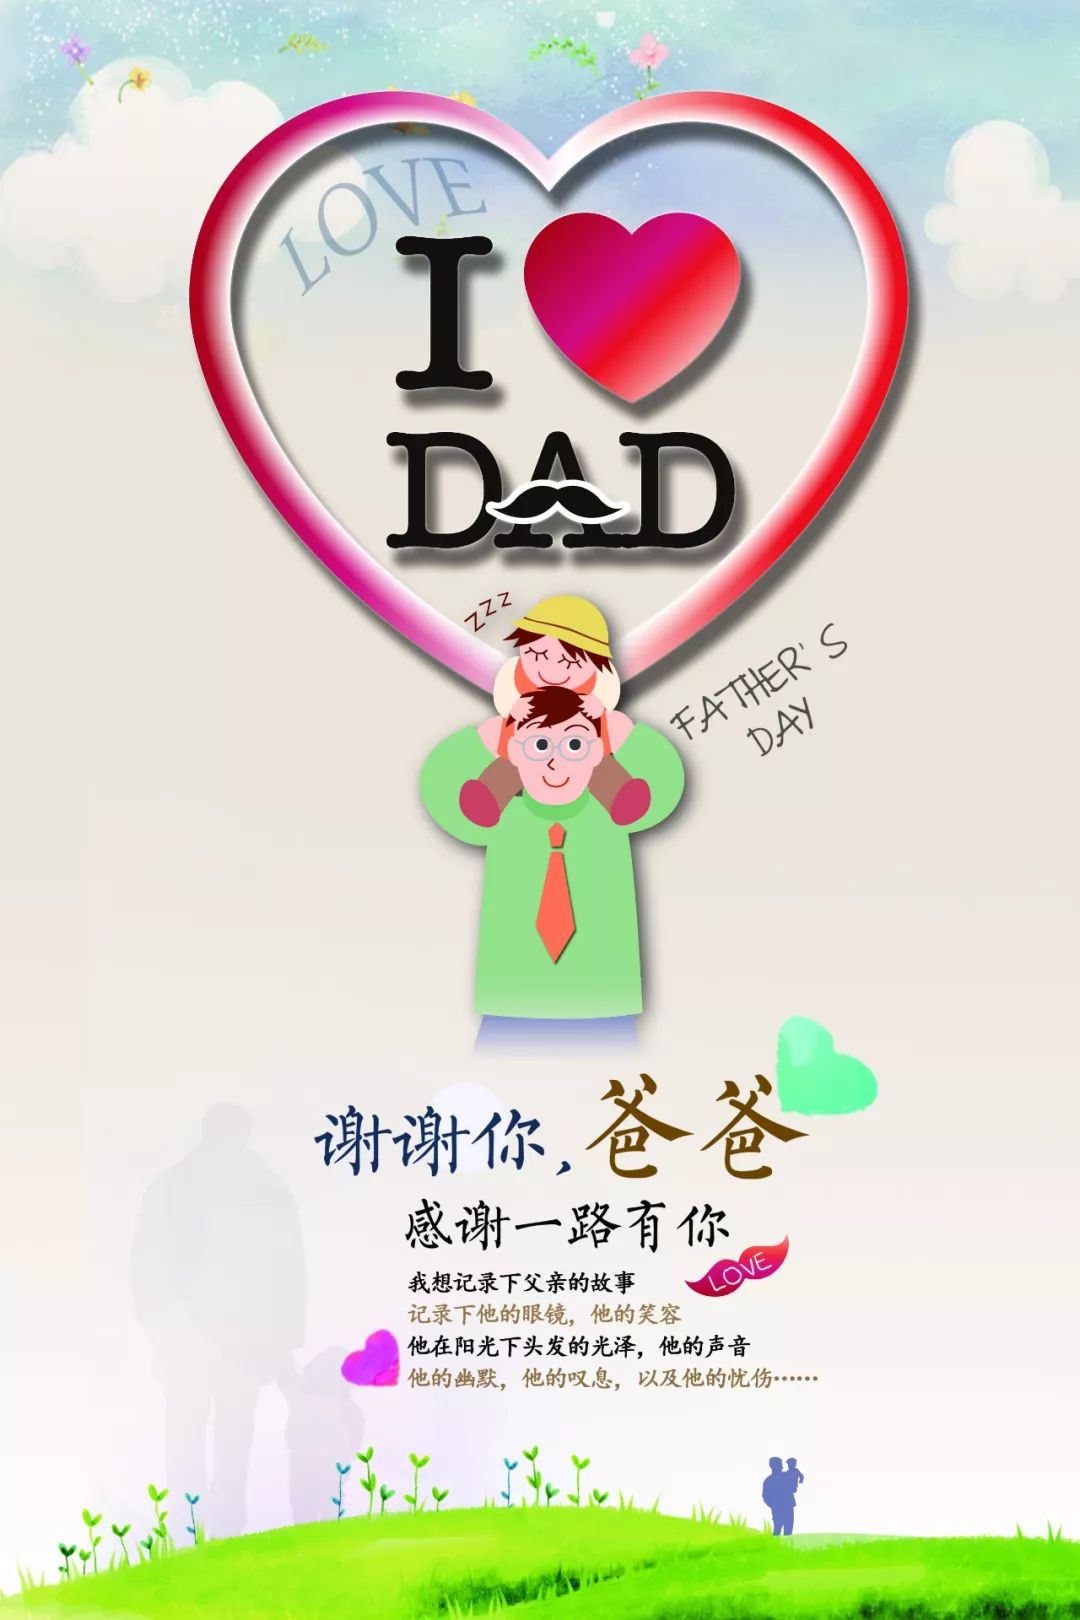 中国父亲节8月8日图片